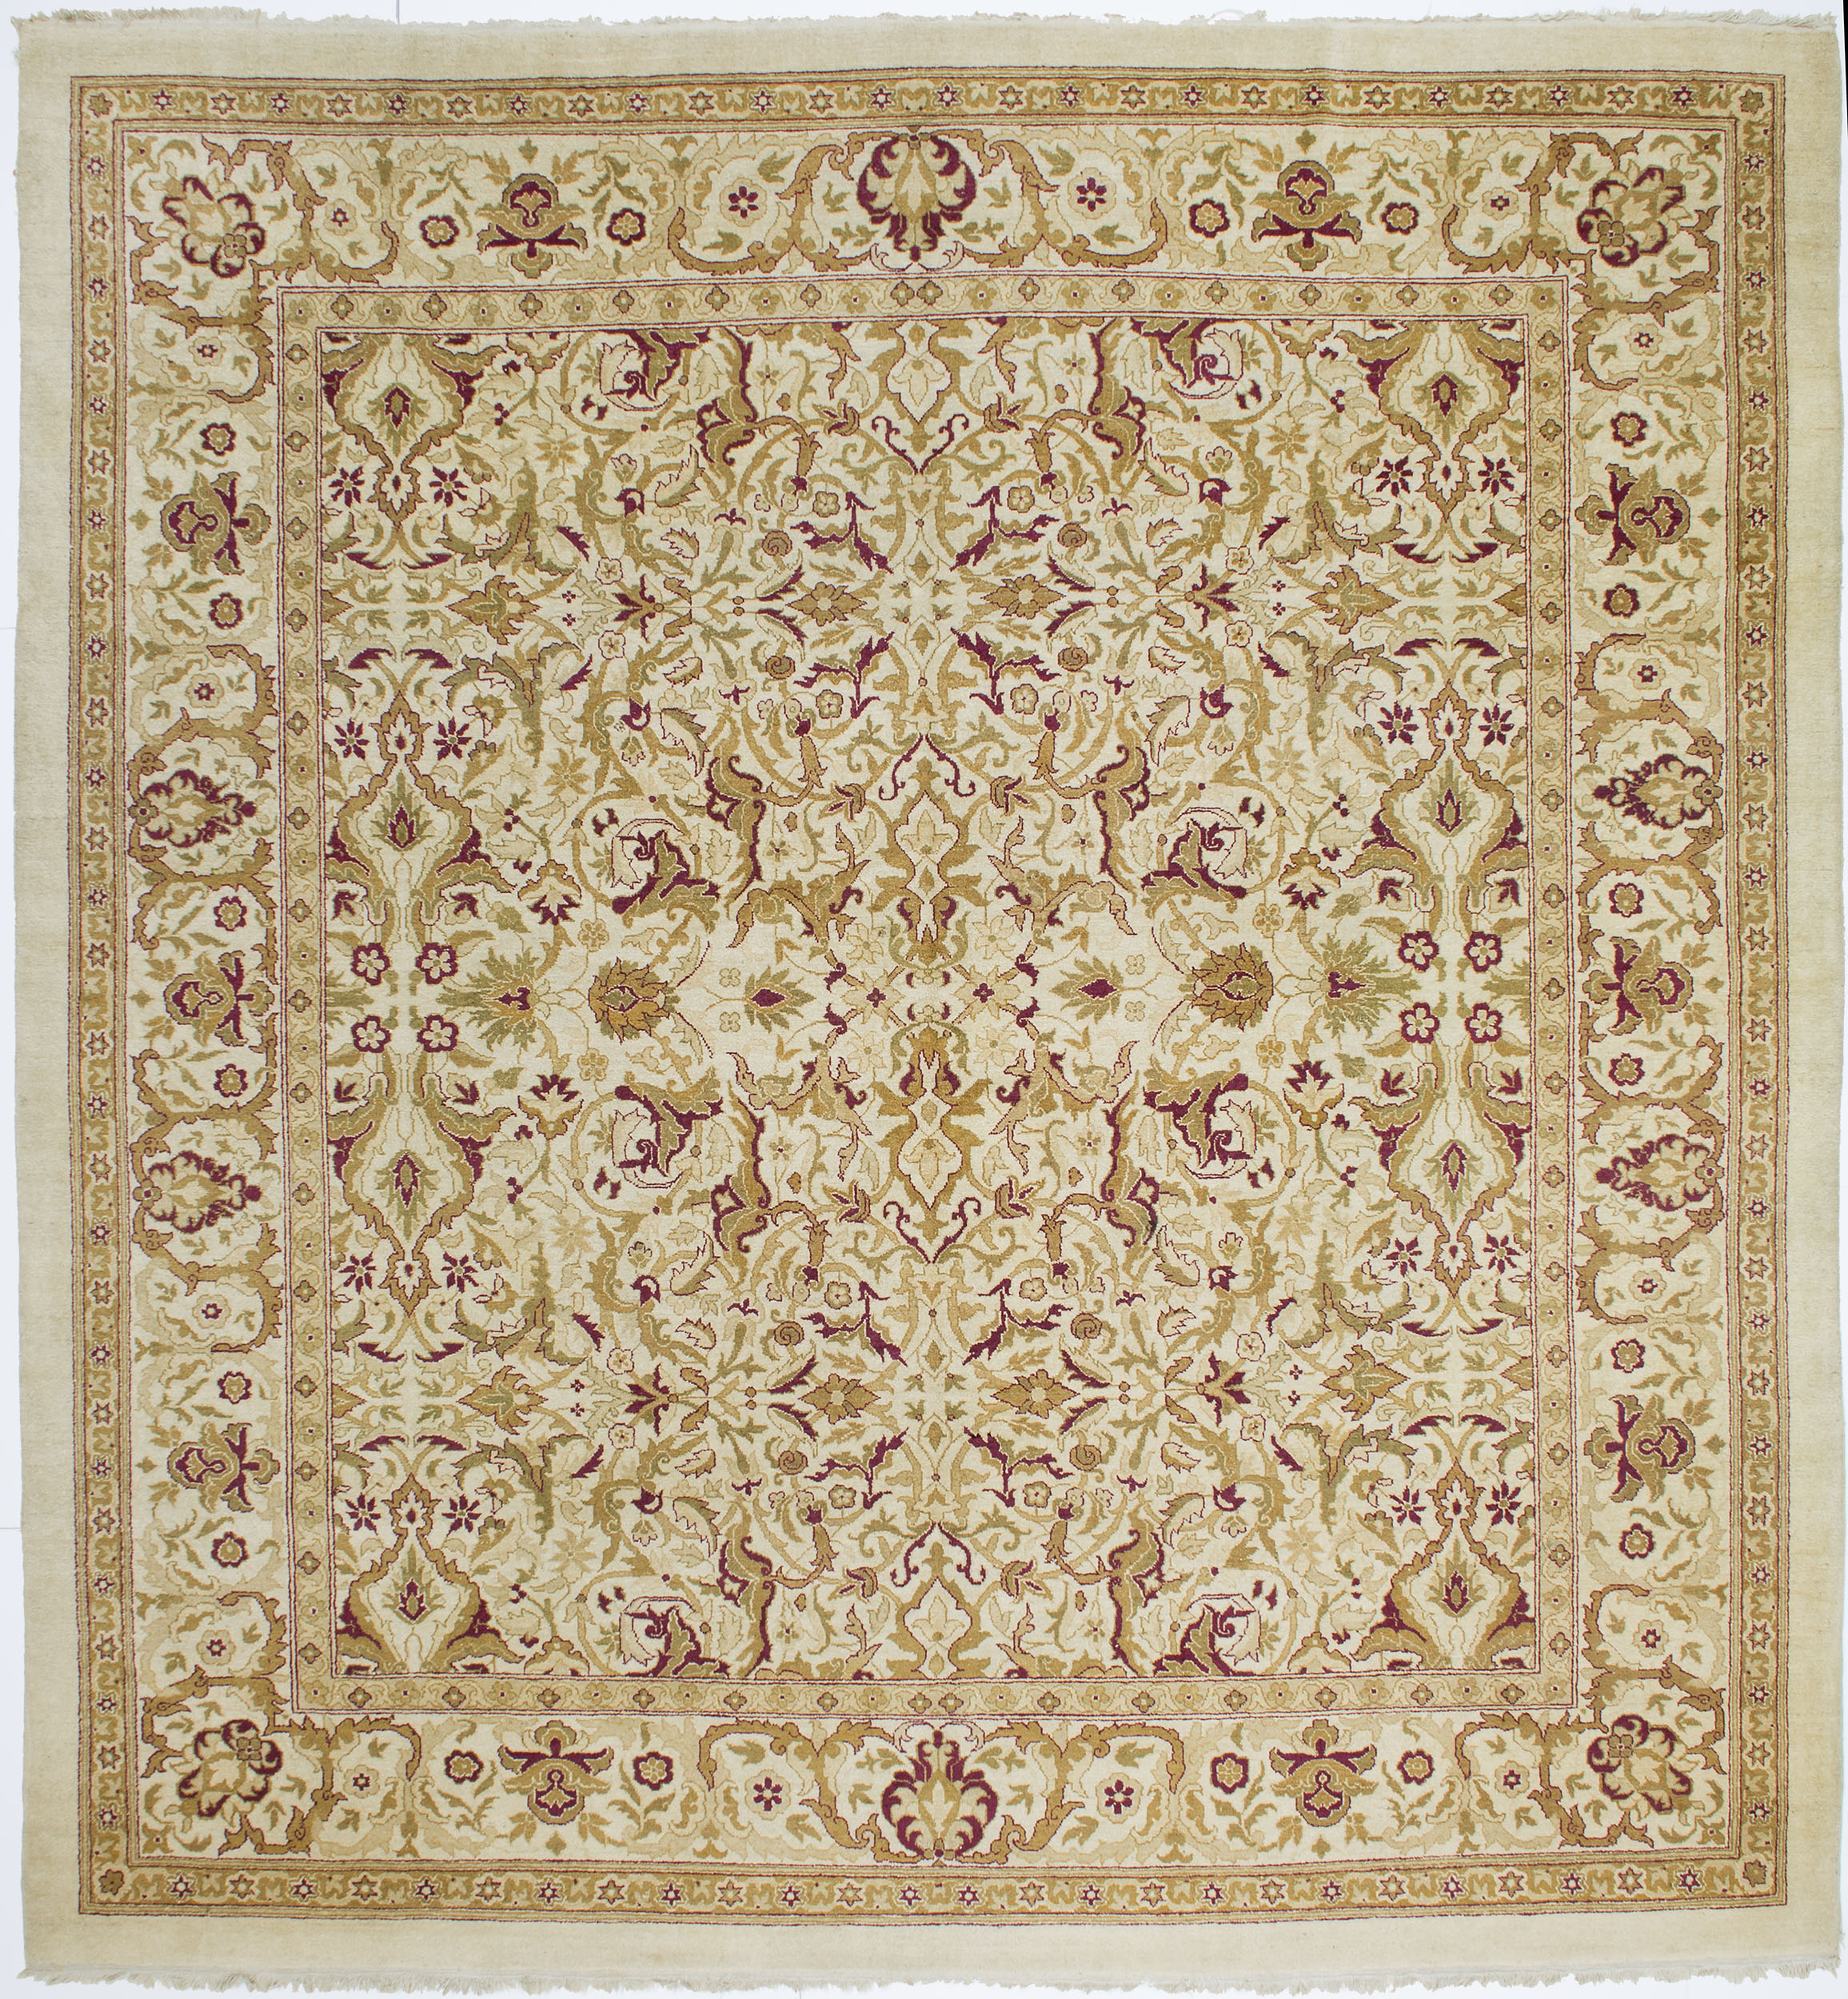 Amritsar Carpet 10' 10" x 10' 1" 